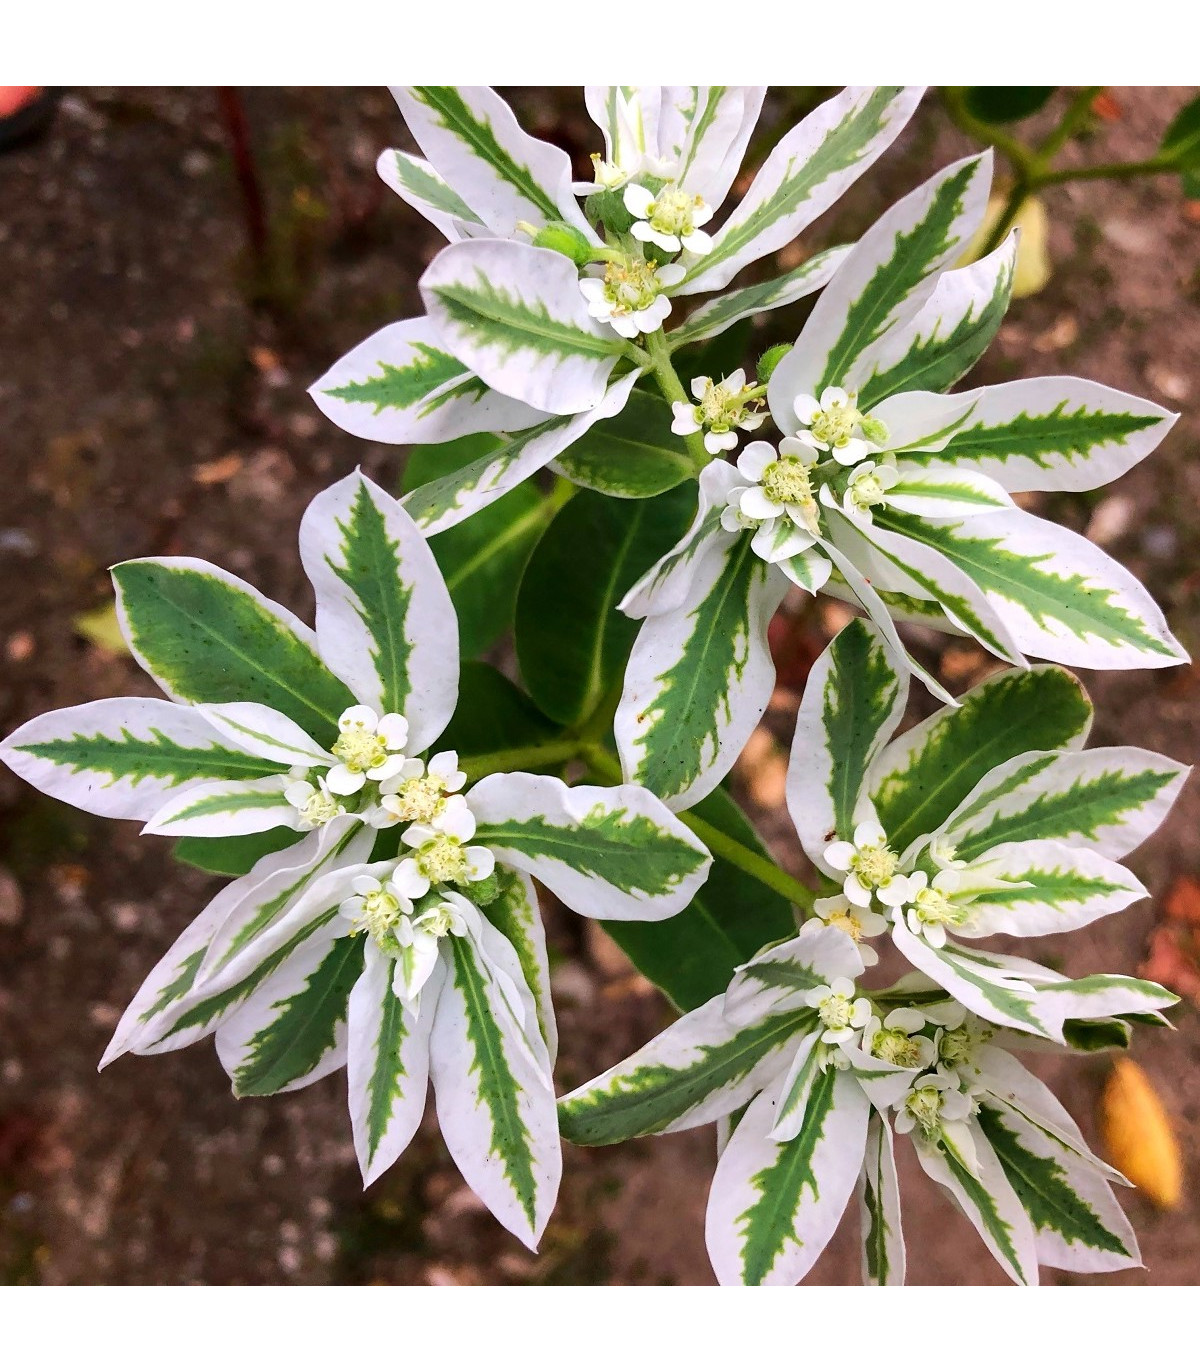 Mliečnikovka obrúbená - Euphorbia marginata - semená - 20 ks